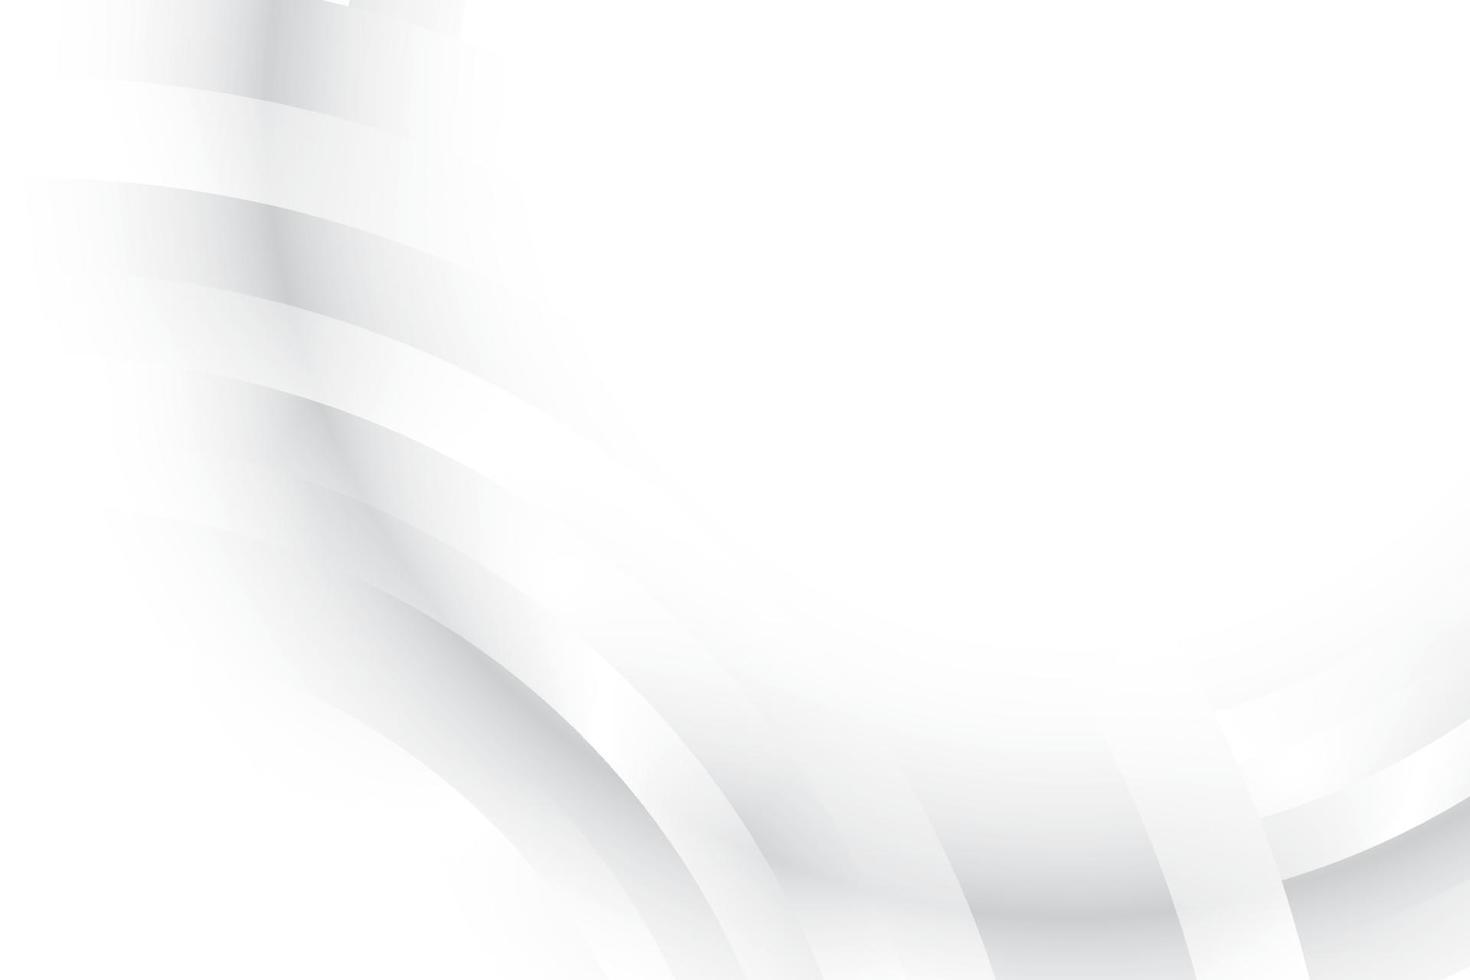 couleur blanche et grise abstraite, arrière-plan design moderne avec forme ronde géométrique. illustration vectorielle. vecteur